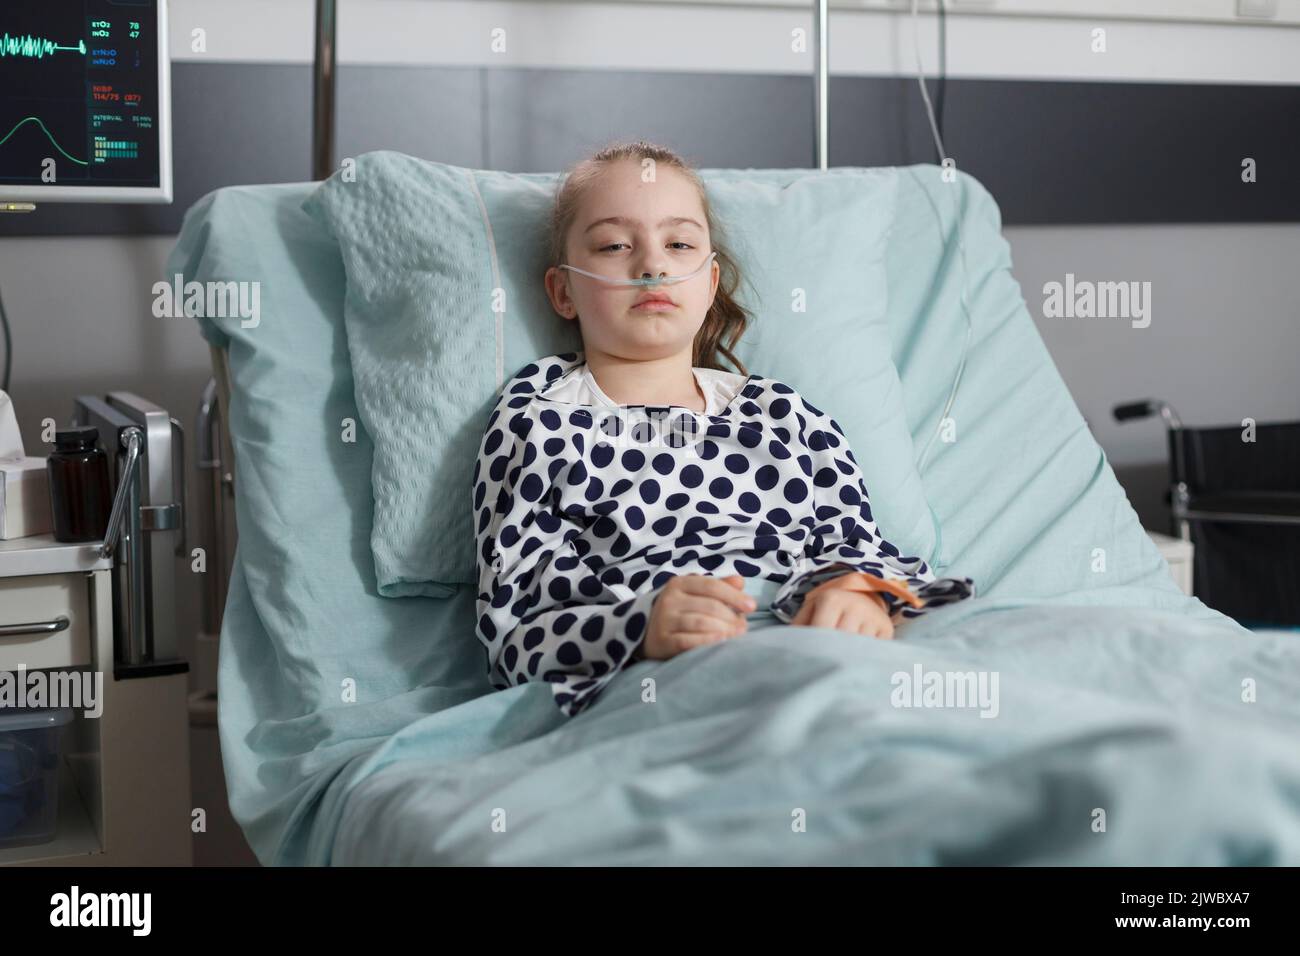 Petite Fille Malade Hospitalis E Se Reposant Dans Le Lit De Patient De L Tablissement De Soins